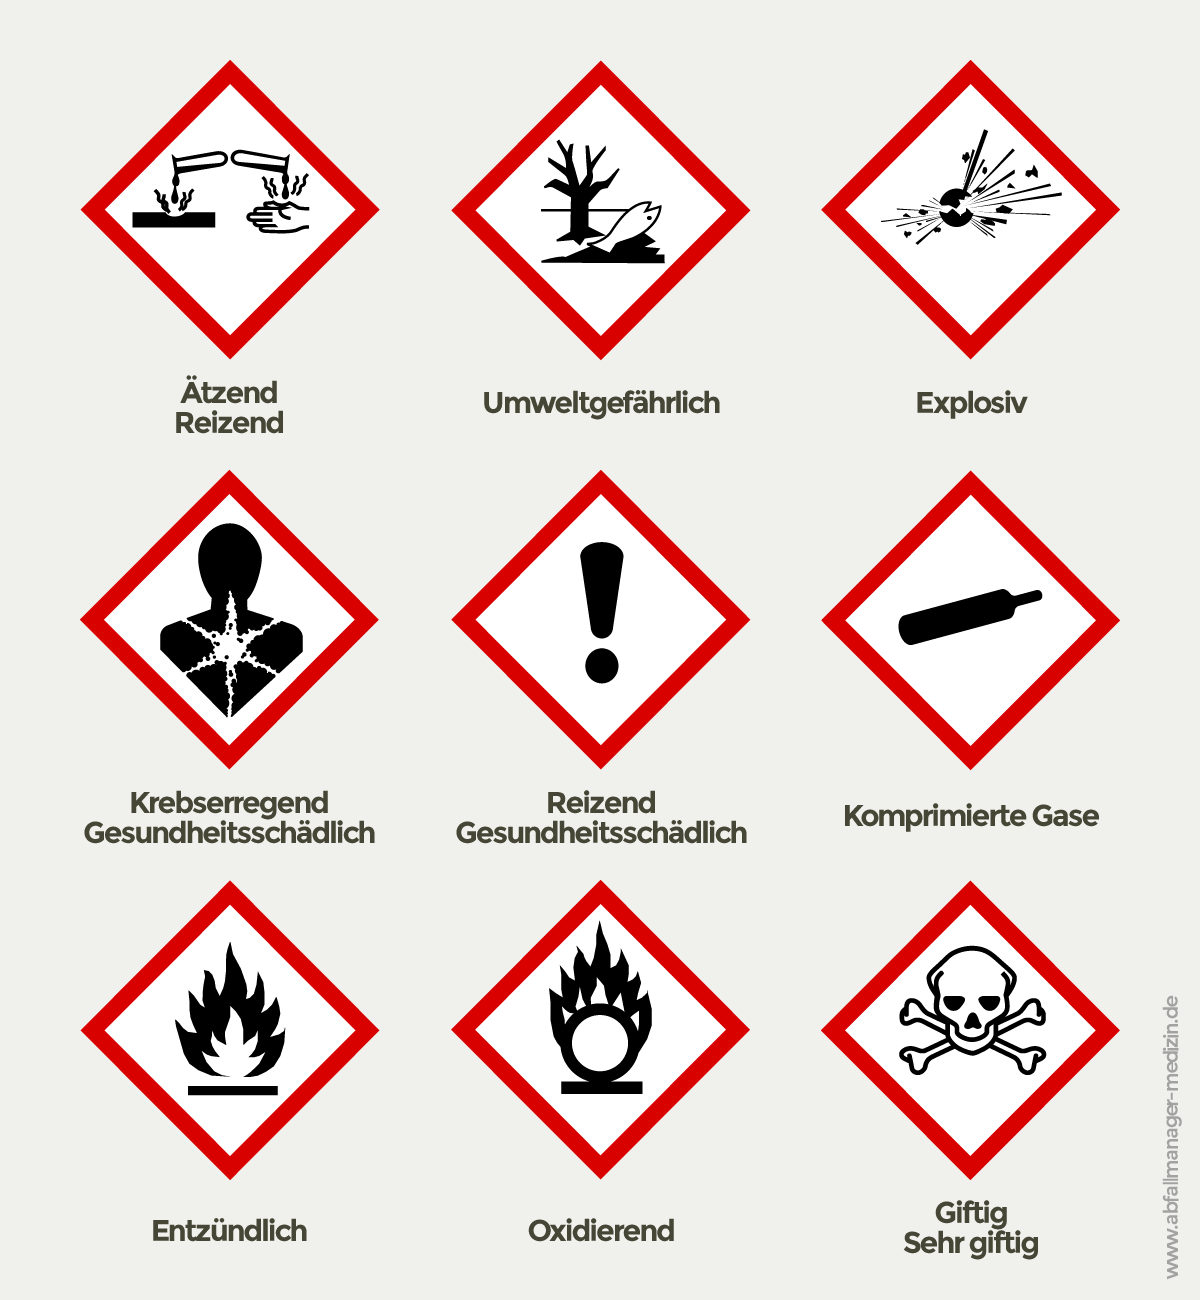 Einstufung, Kennzeichnung und Verpackung gefährlicher Stoffe und Gemische sowie Schutzmaßnahmen bei Tätigkeiten mit Gefahrstoffen legt die Gefahrstoffverordnung fest (Grafik: Abfallmanager Medizin)